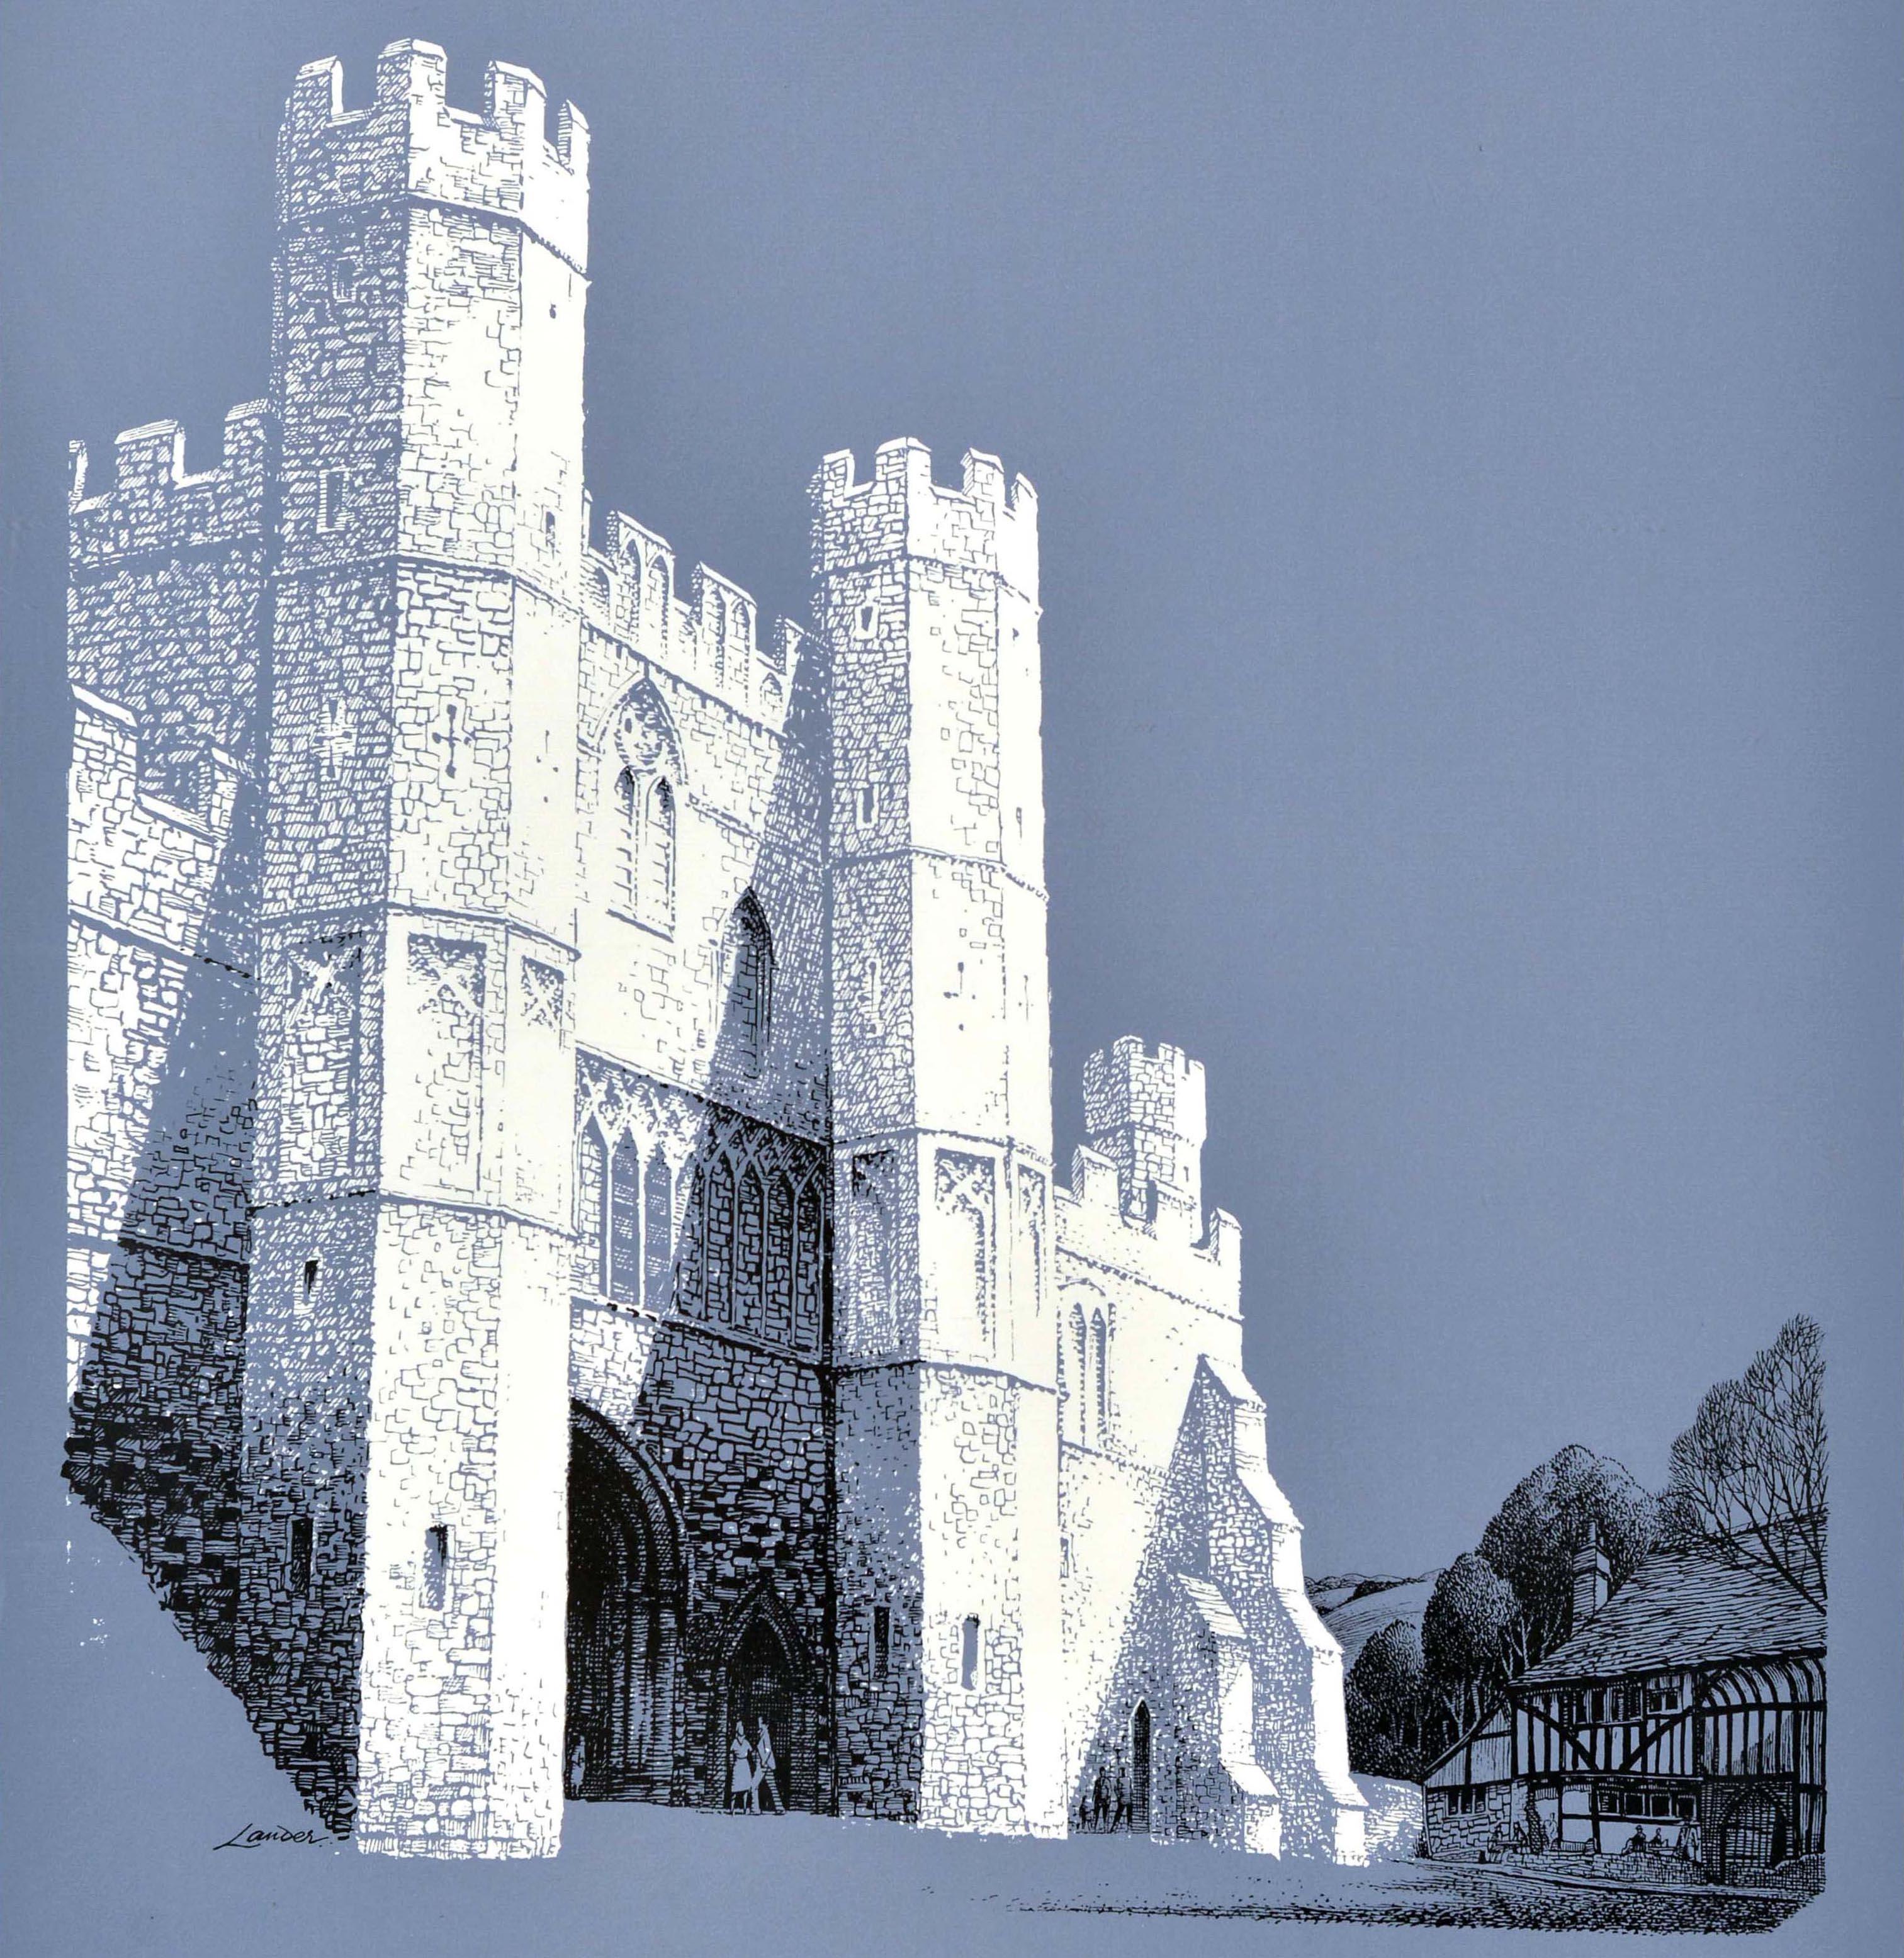 Affiche de voyage vintage d'origine de l'Abbaye de Hastings, paysagiste britannique des chemins de fer - Print de Reginald Lander